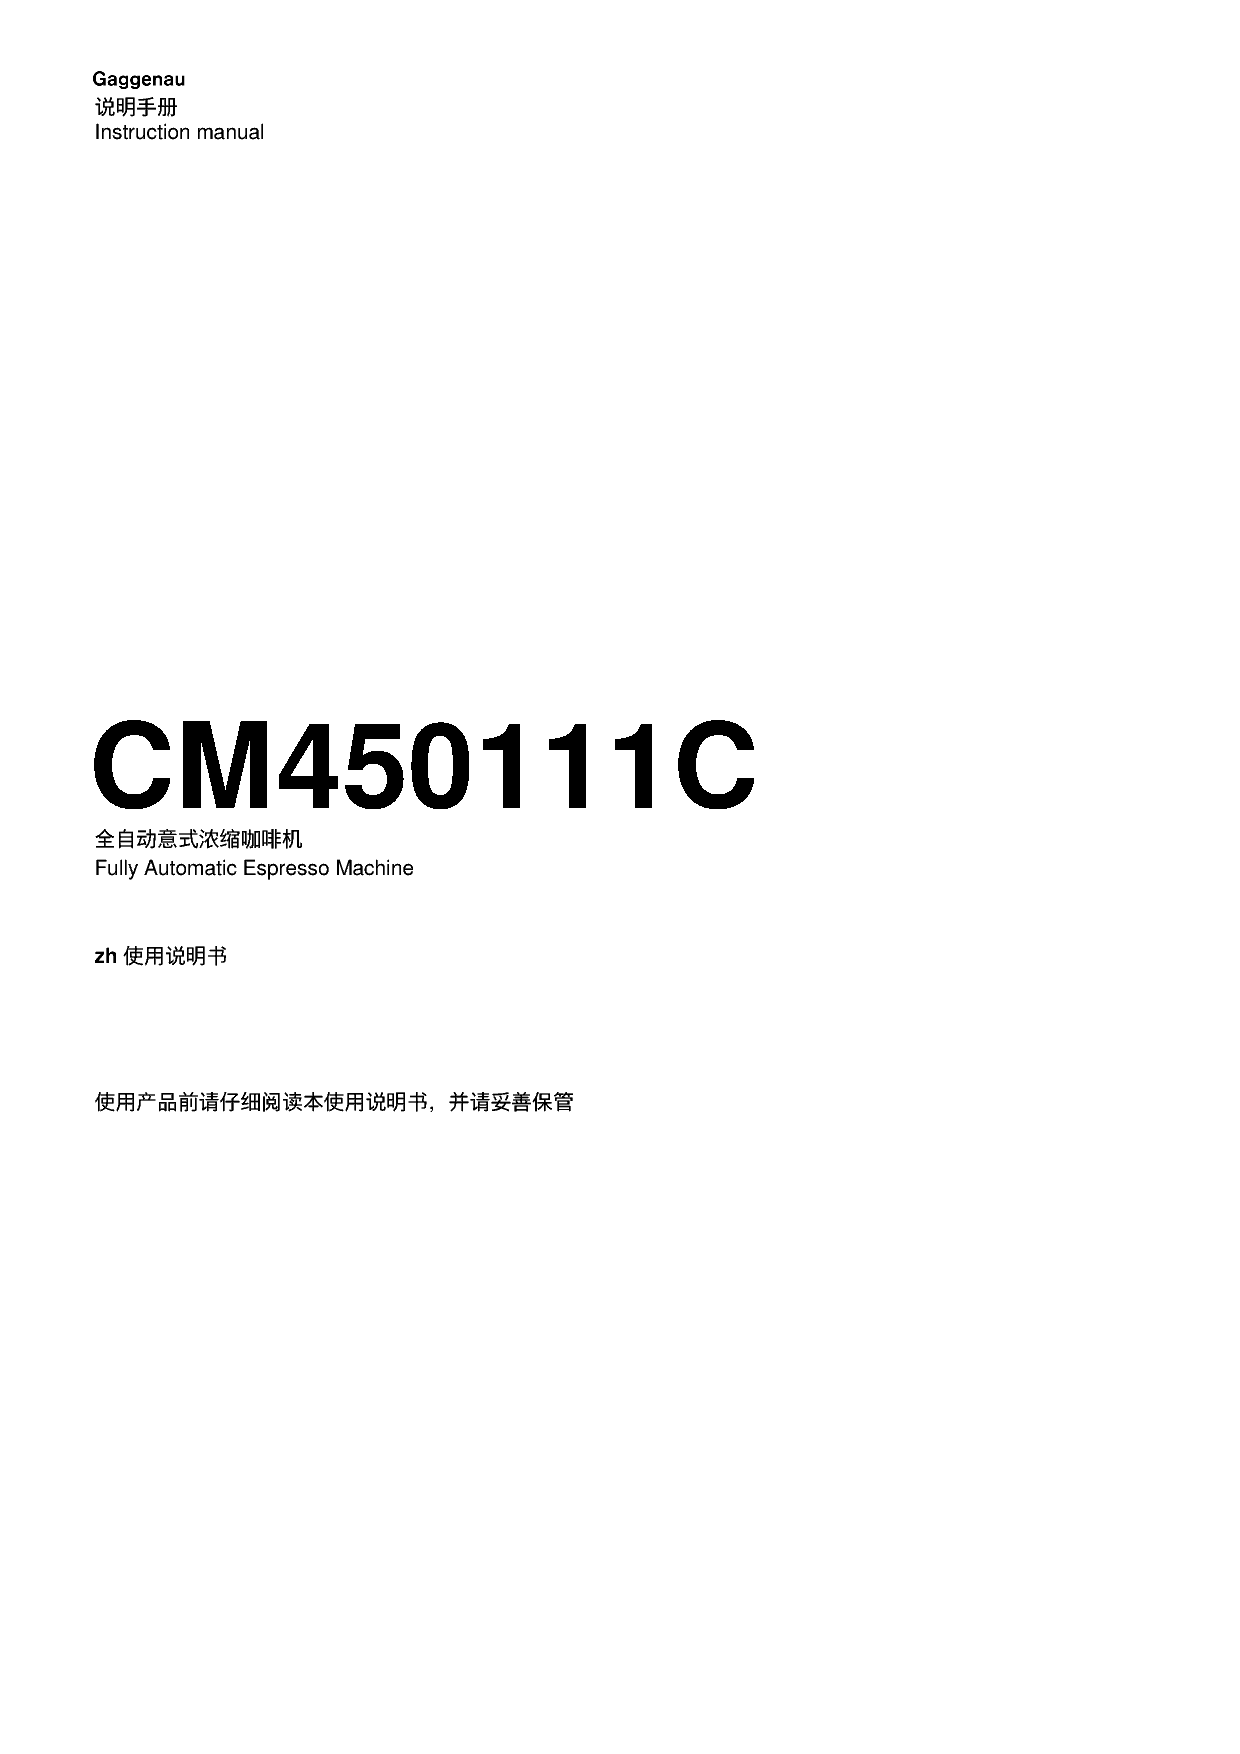 嘉格纳 Gaggenau CM450111C 使用说明书 封面